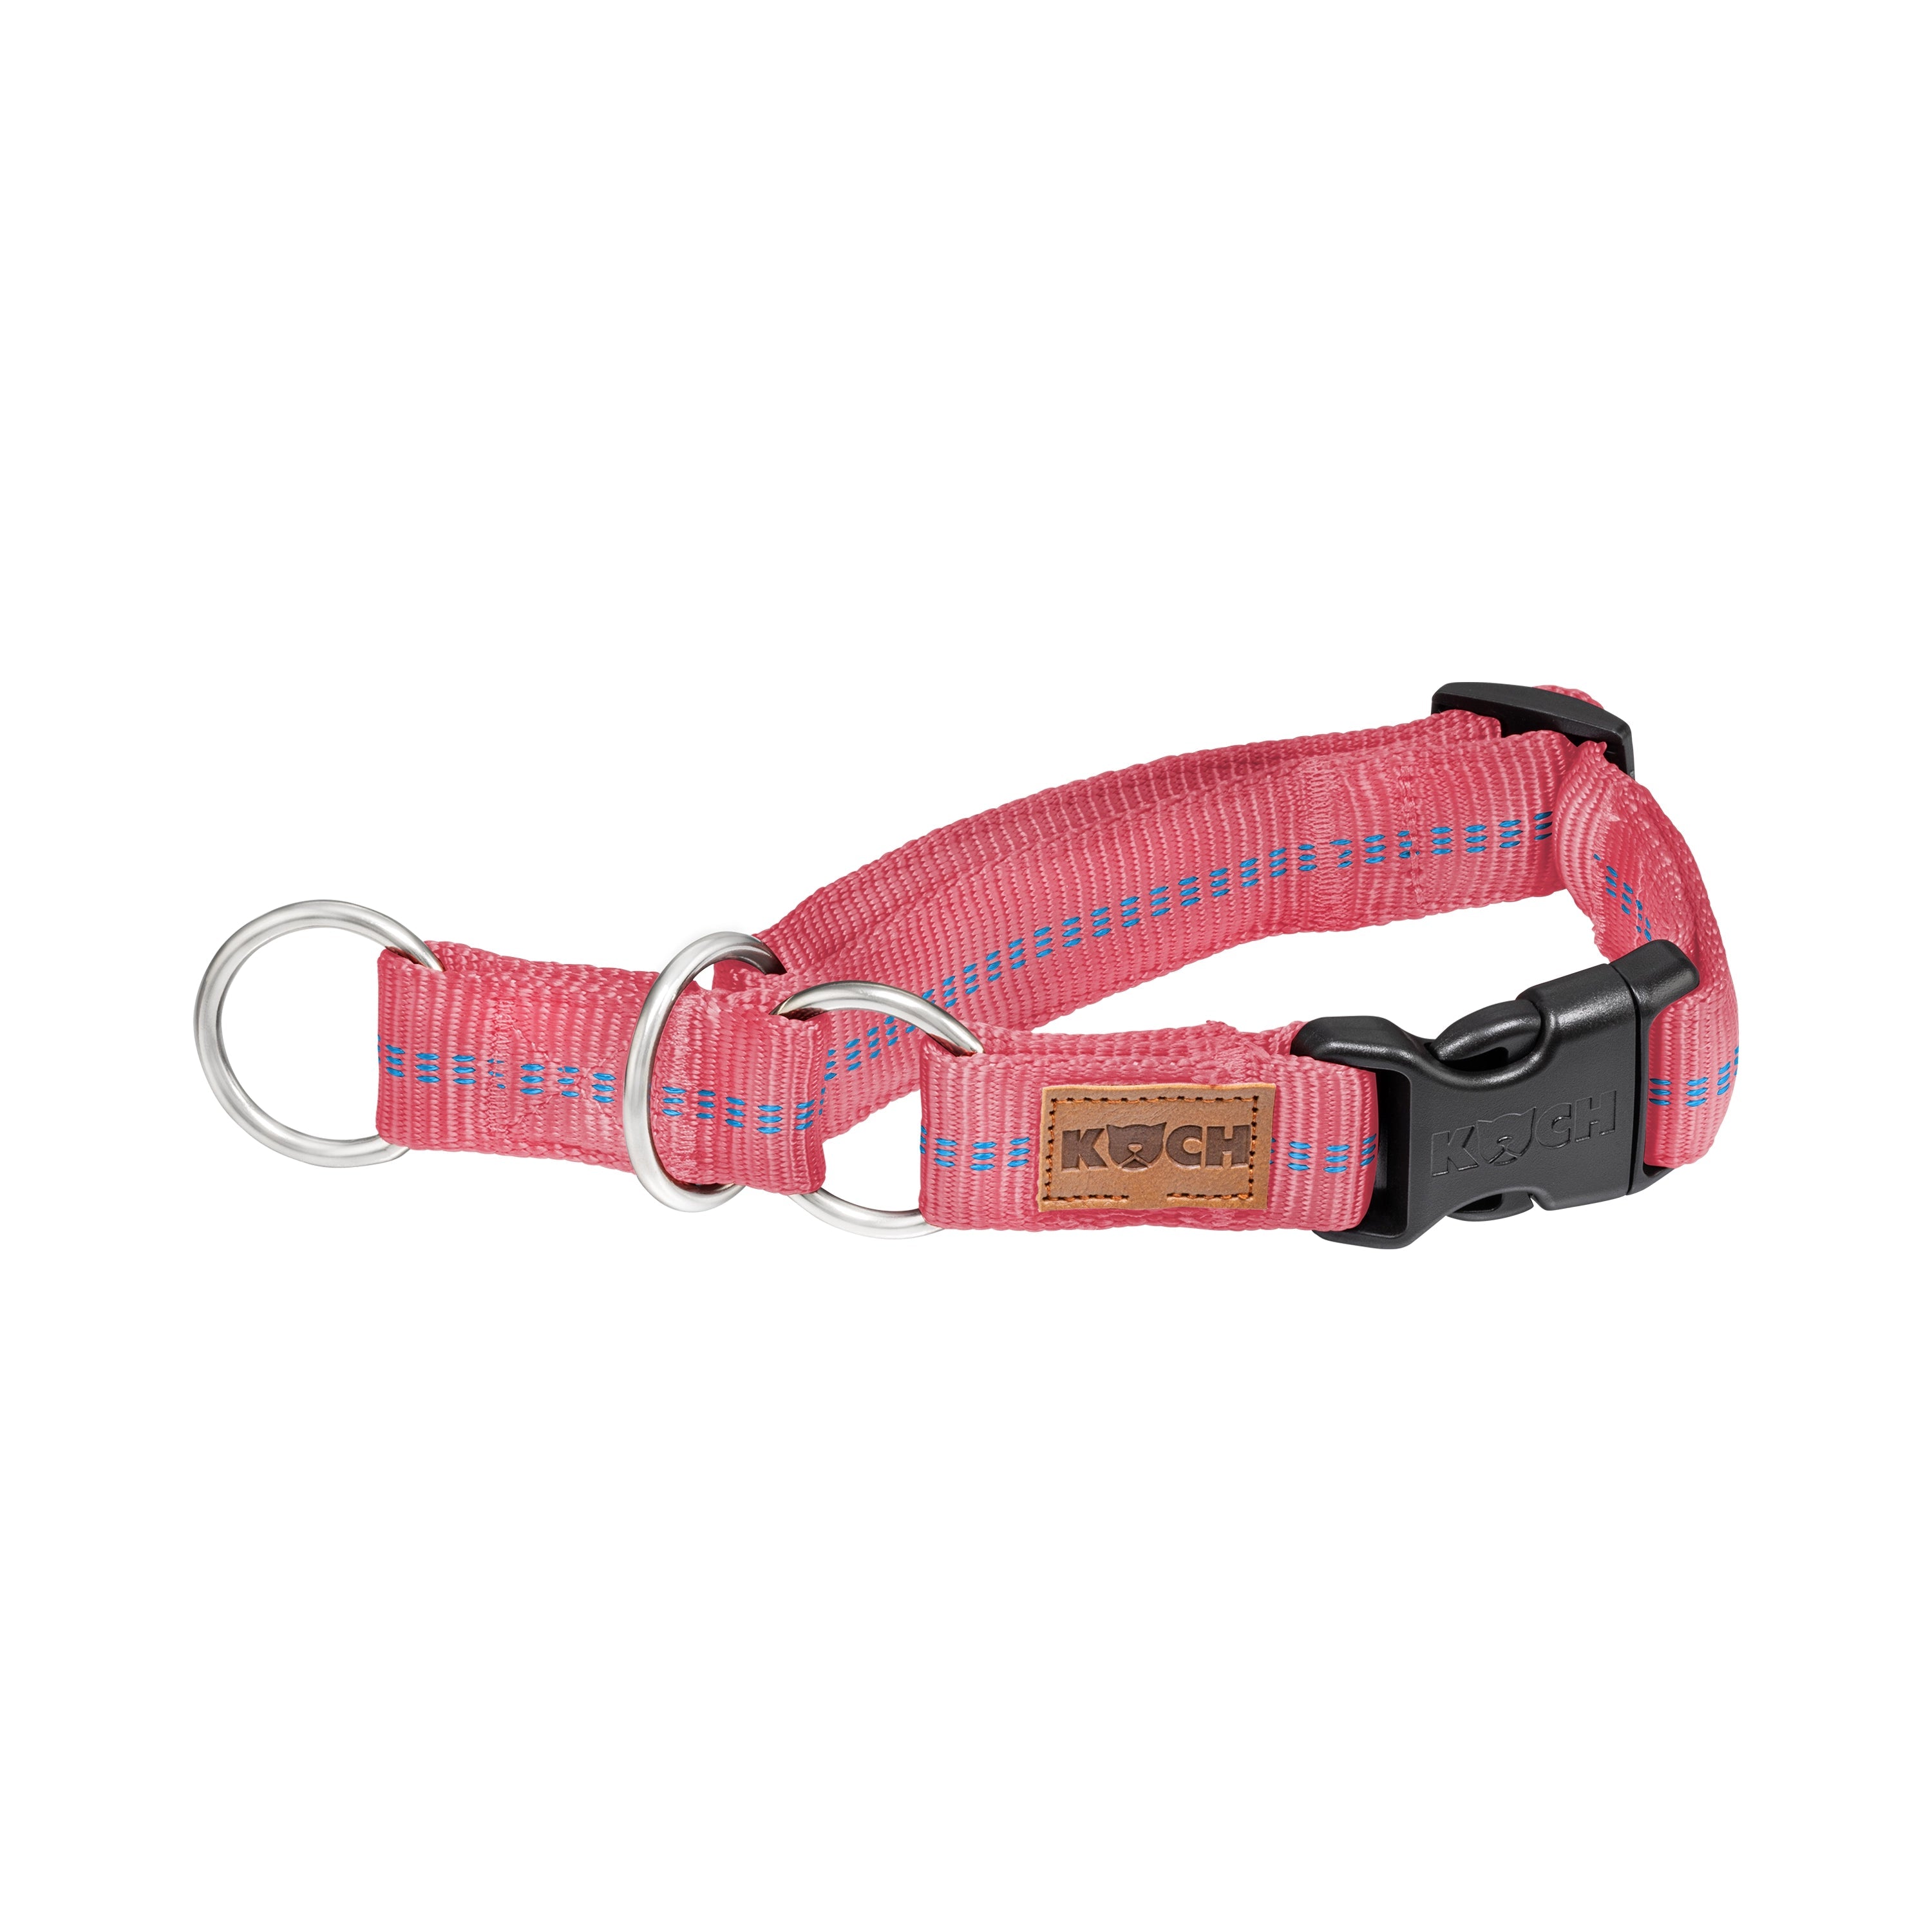 KOCH Premium Zugstopp-Halsband gepolstert flamingo pink mit Kennfäden #farbe_flamingo pink mit Kennfäden